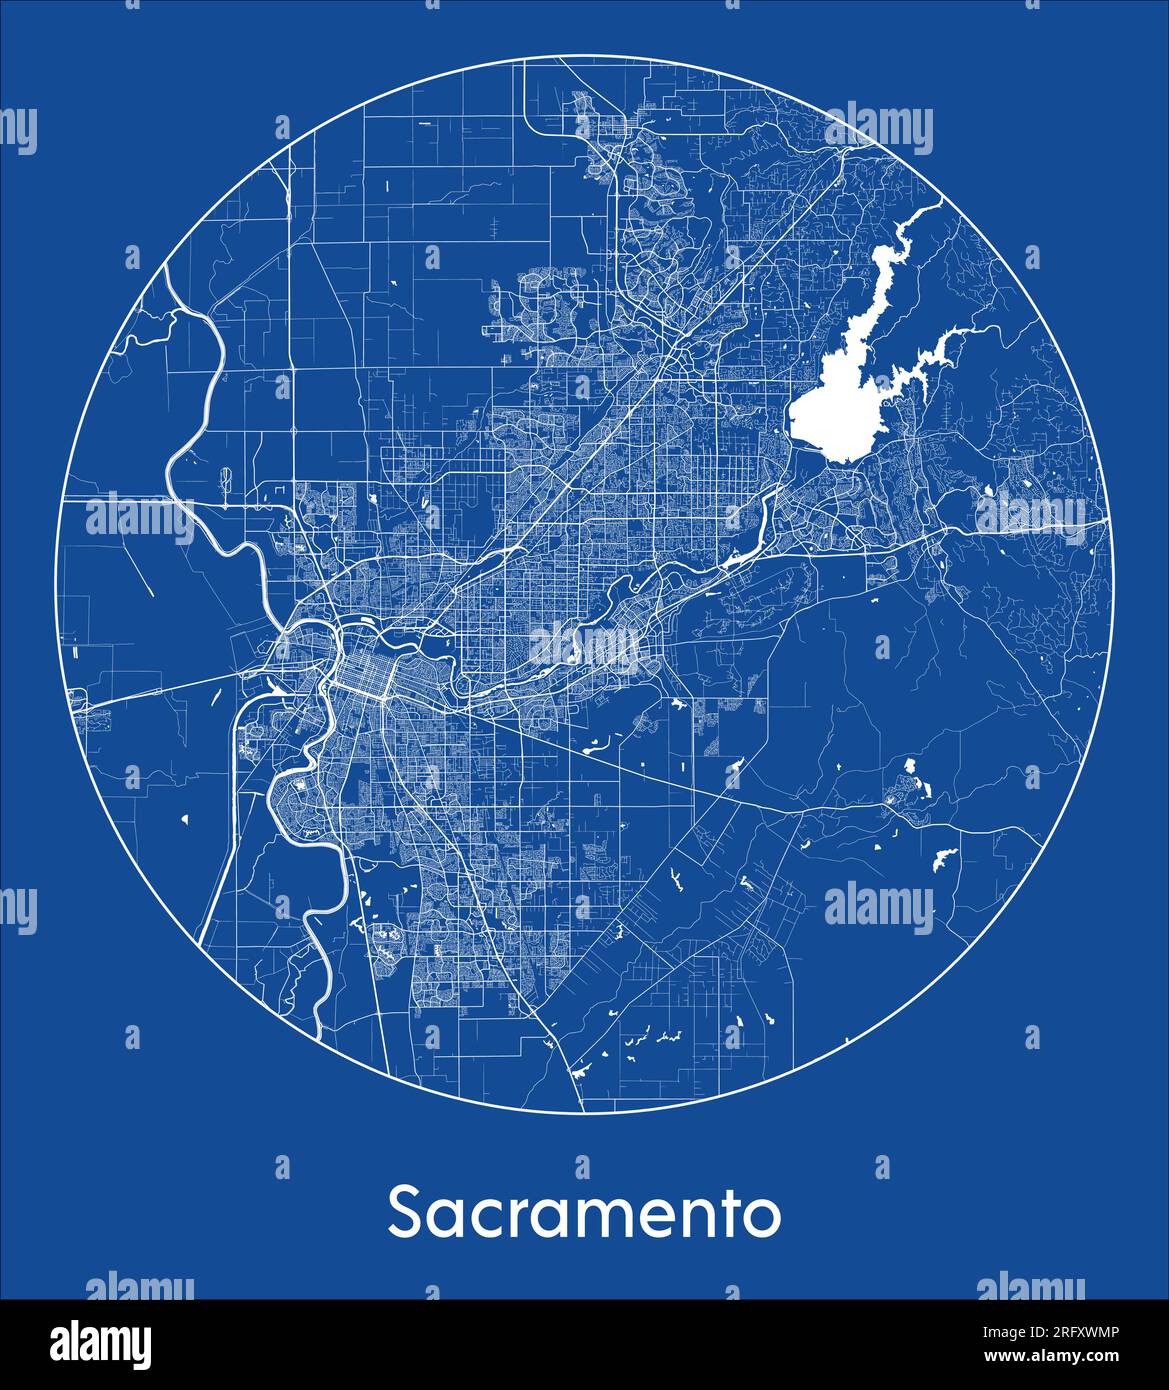 Plan de la ville Sacramento États-Unis Amérique du Nord bleu impression ronde cercle illustration vectorielle Illustration de Vecteur